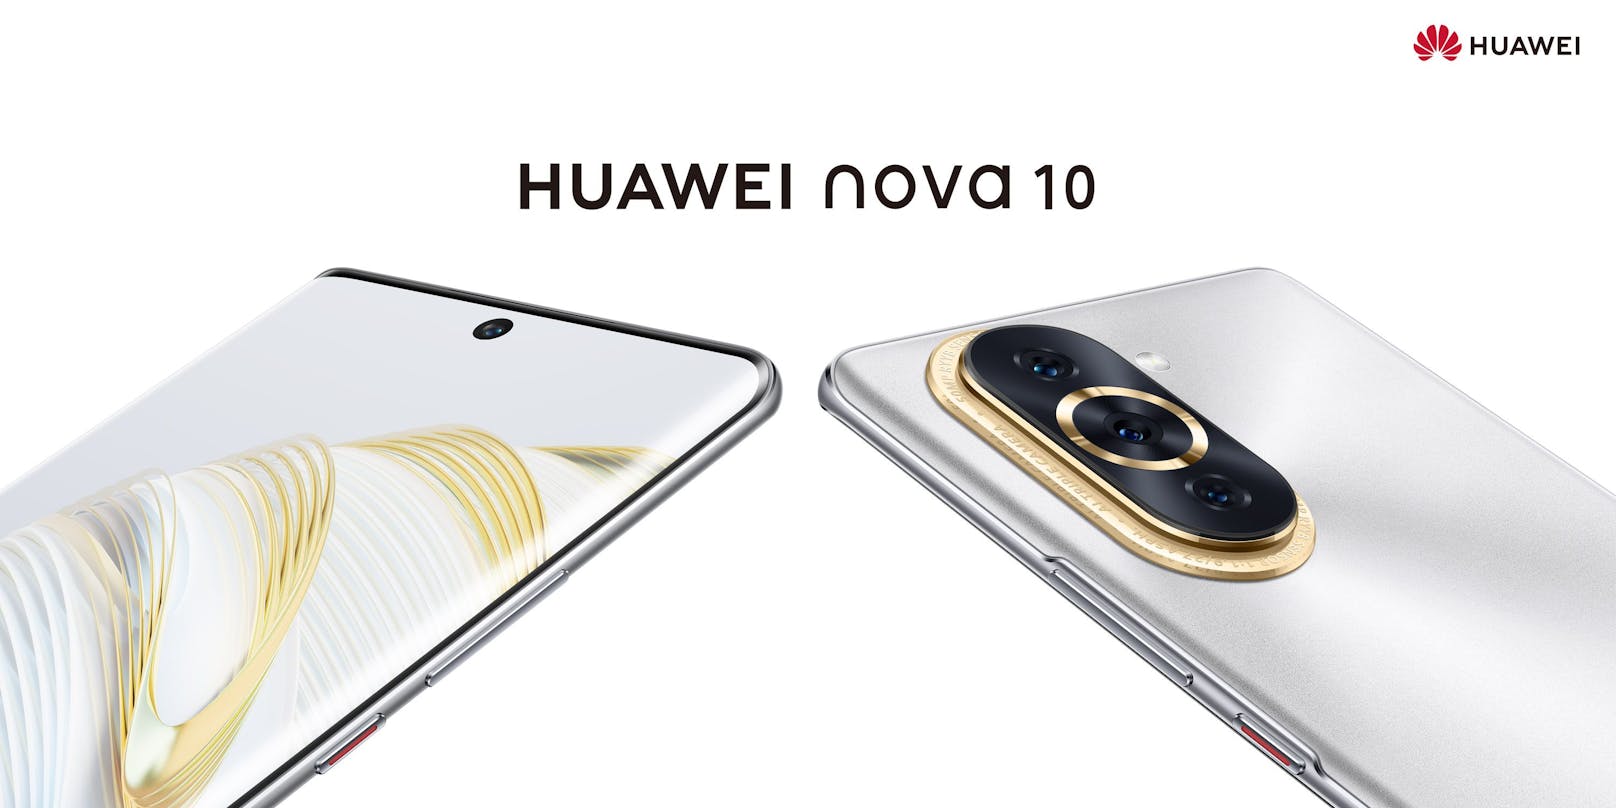 Huawei hat das neue Smartphone nova 10 vorgestellt.